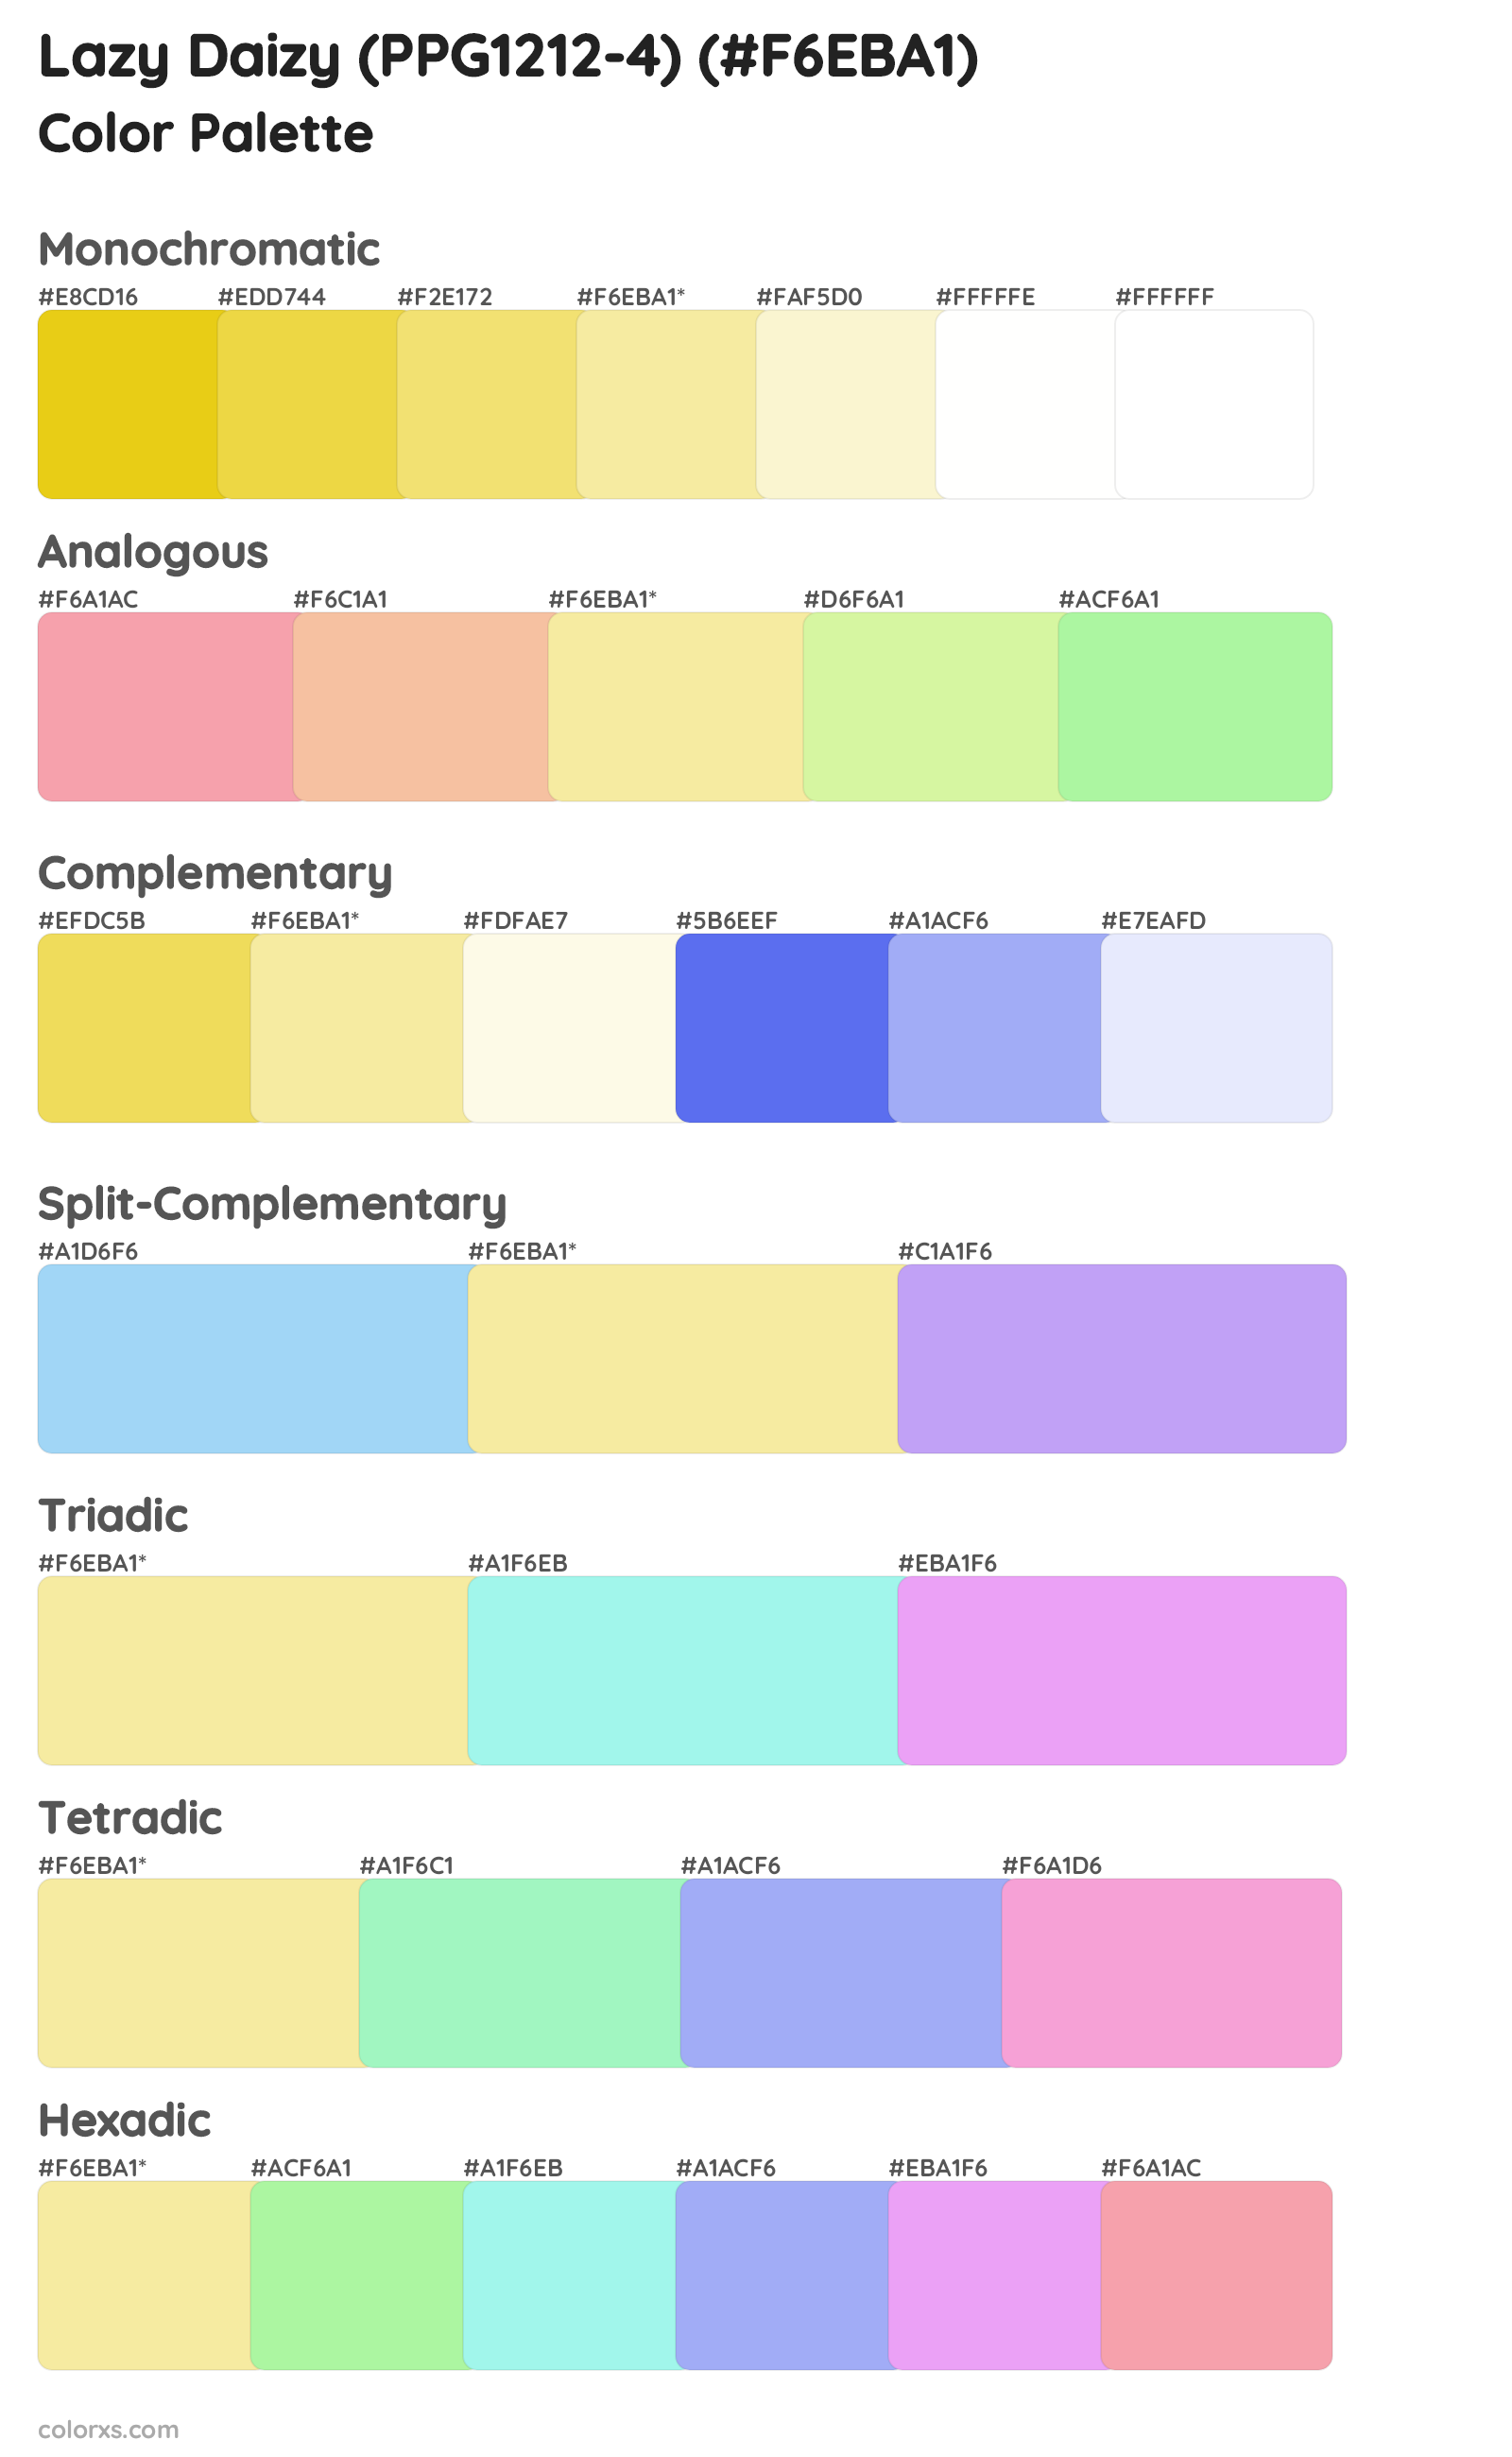 Lazy Daizy (PPG1212-4) Color Scheme Palettes